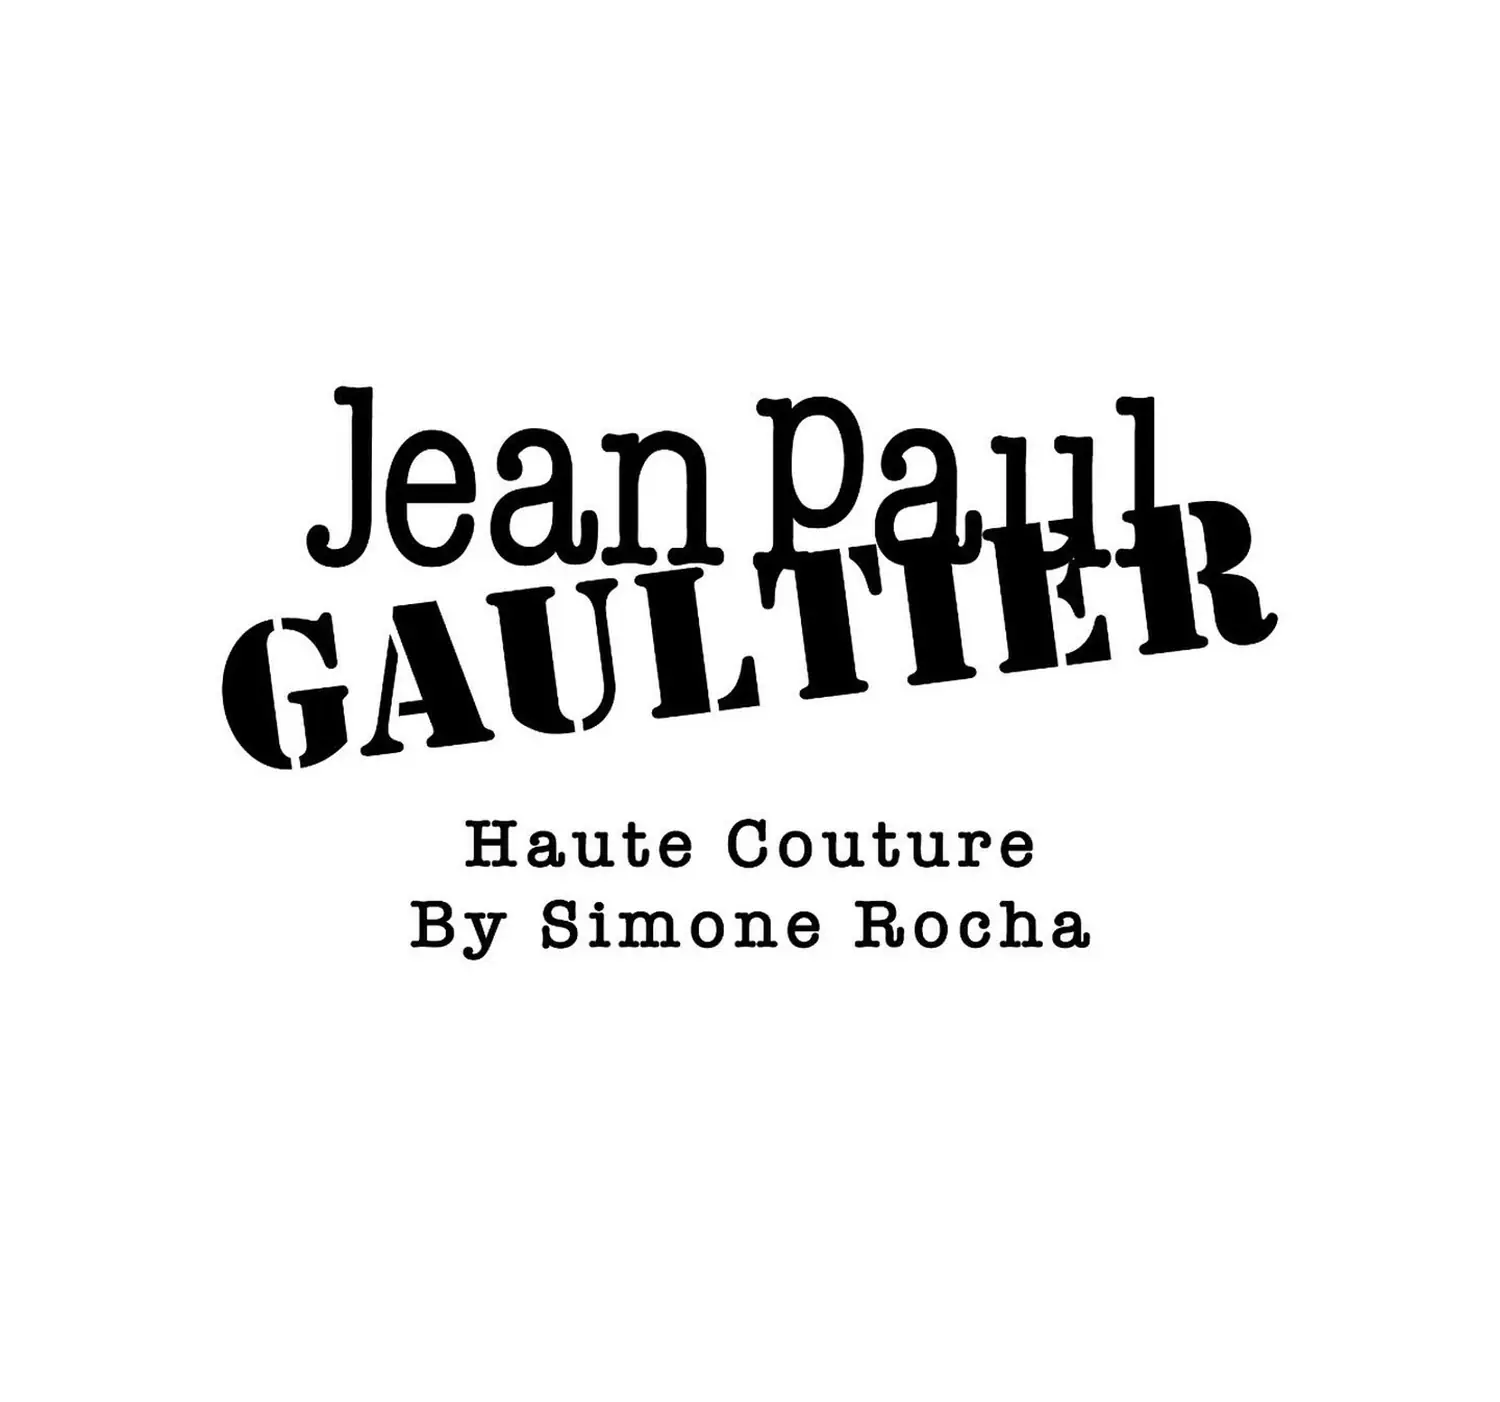 Simone Rocha - Jean Paul Gaultier guest couturier